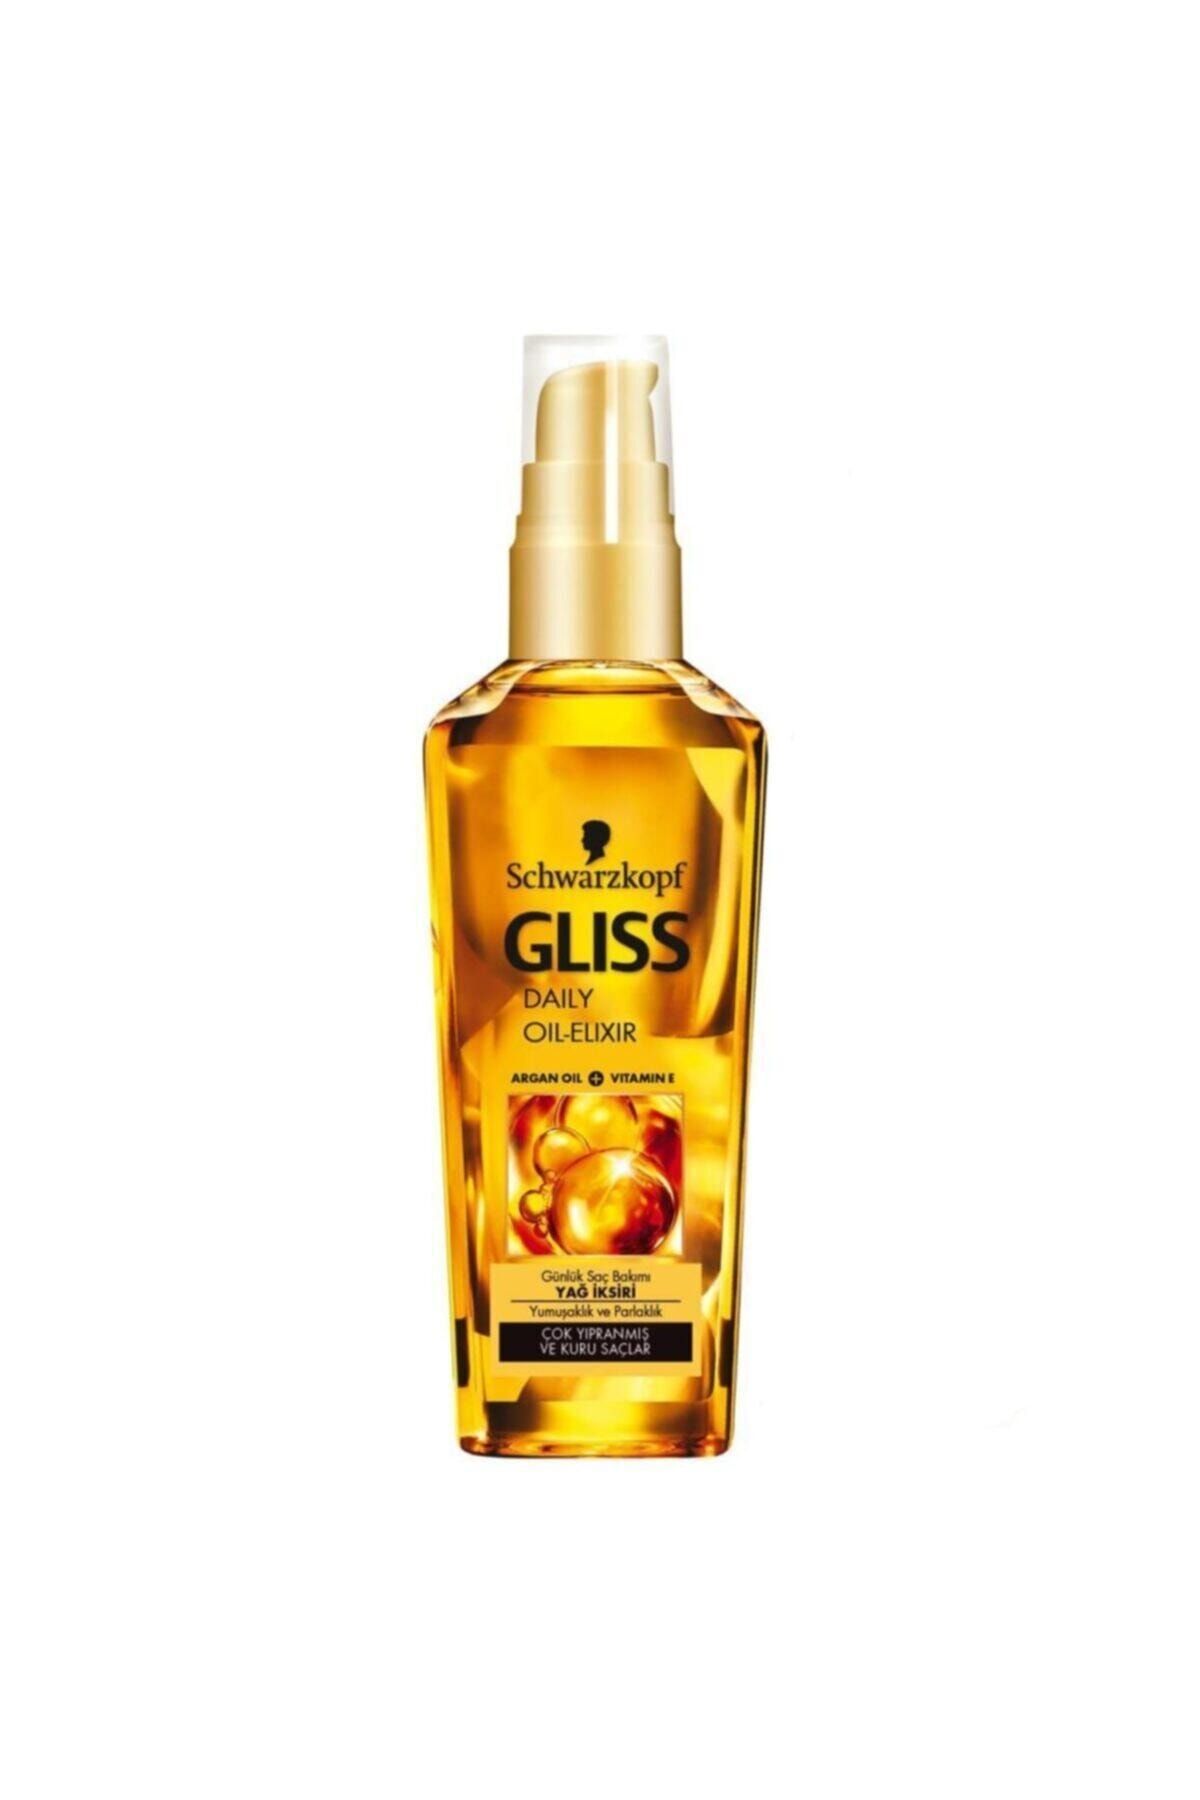 Gliss Ultimate Oil Elixir Serum Sac Bakim Yagi 75 Ml Fiyati Yorumlari Trendyol